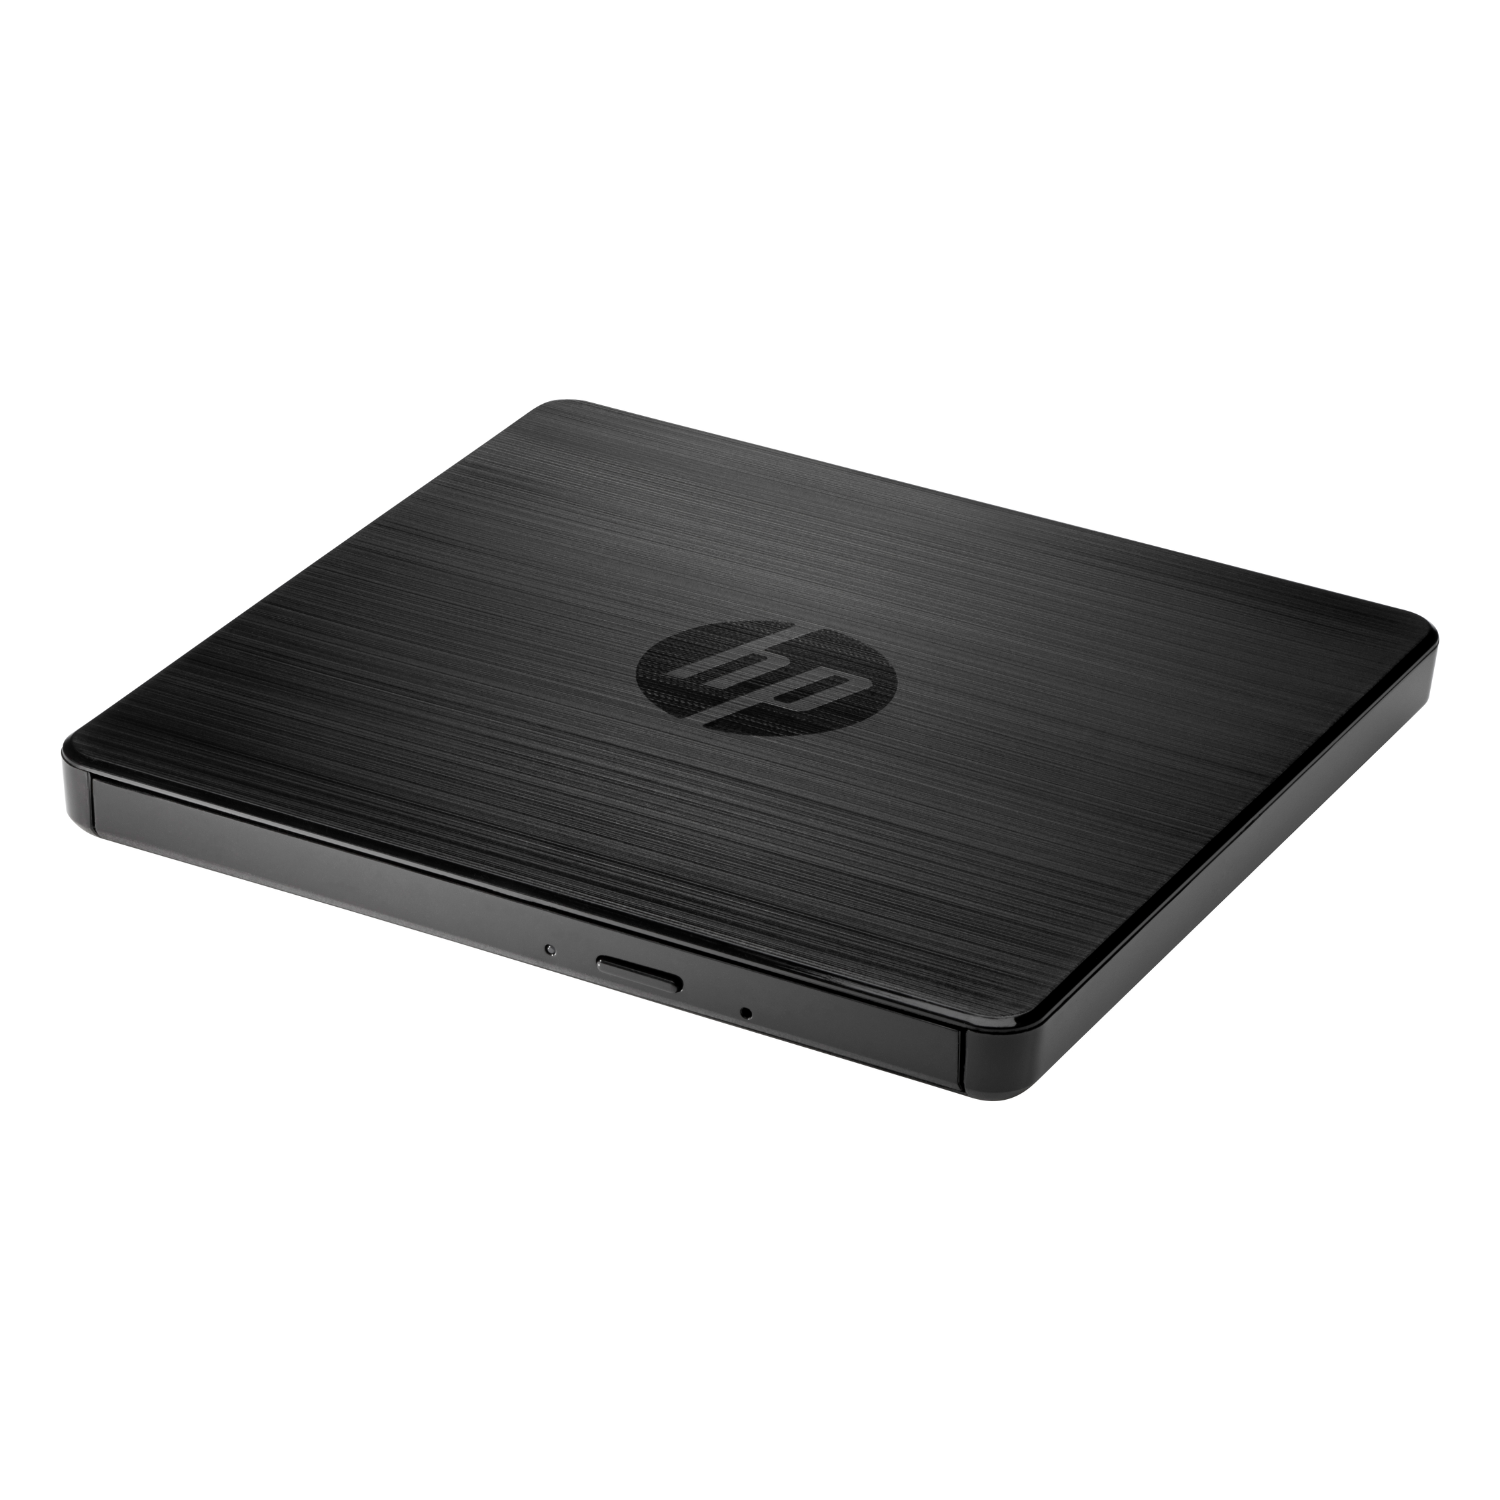 Retirarse suelo Nueve Lector de disco externo HP USB DVD/RW (F2B56AA)